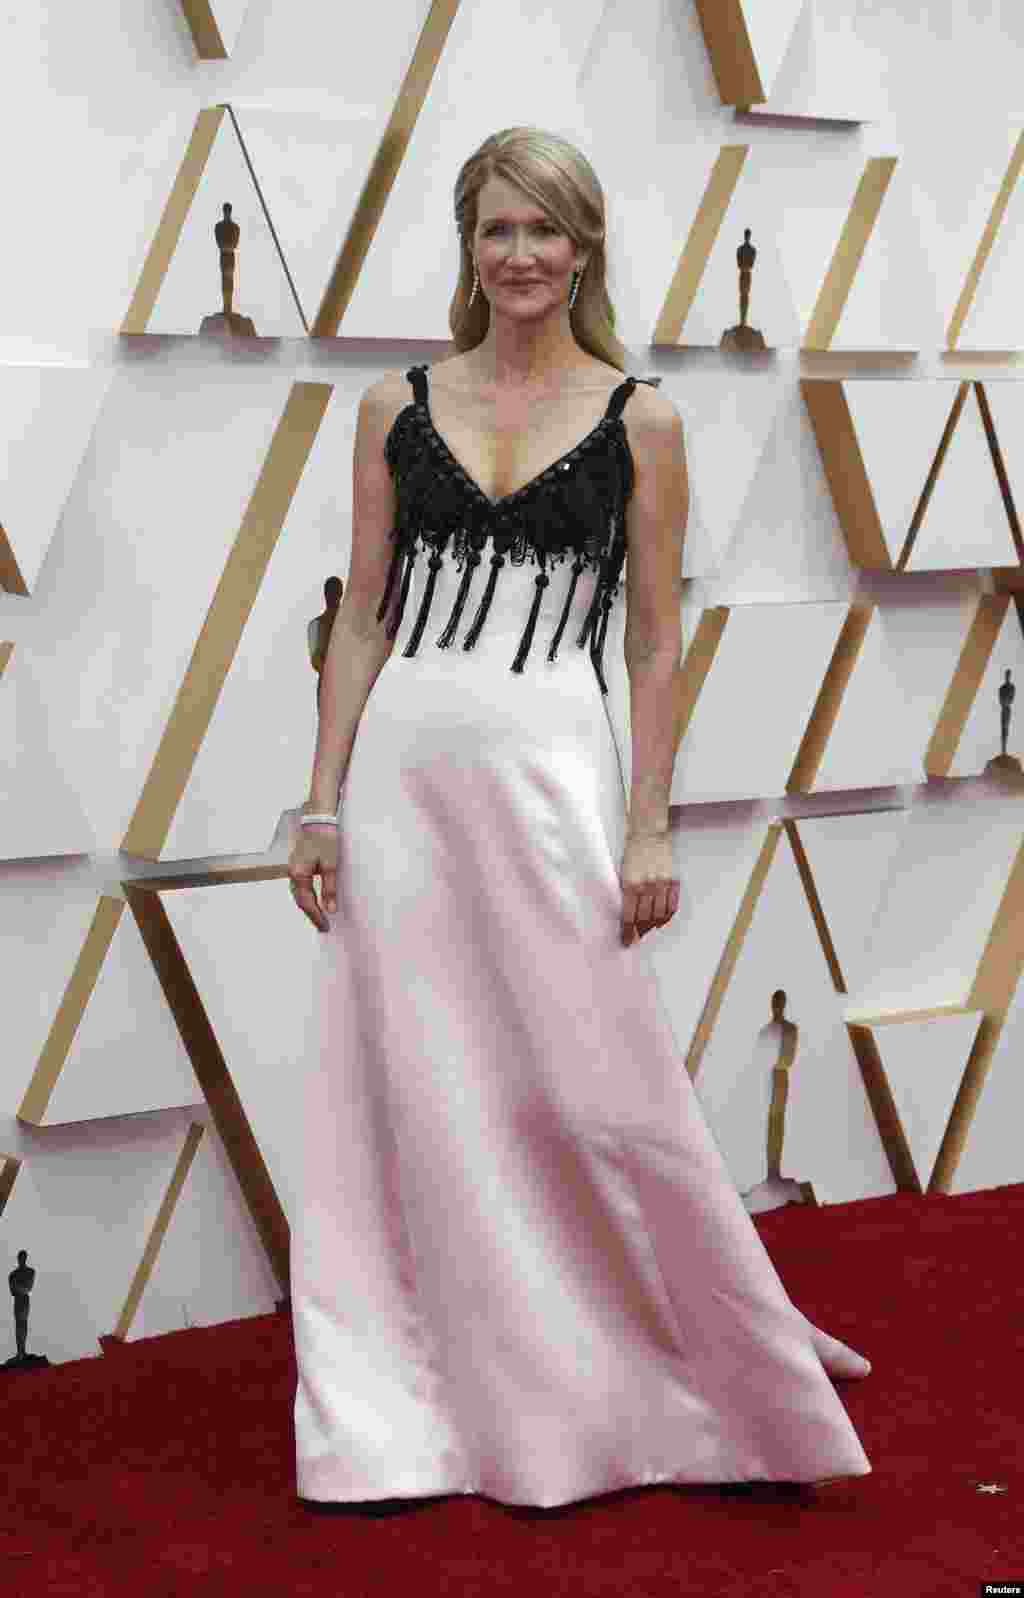 អ្នកស្រី Laura Dern នៅ​លើ​កម្រាល​ព្រំ​ក្រហម​នៅ​ពេល​មក​ដល់​ពិធី​ទទួល​ពានរង្វាន់​អូស្ការ Academy Awards លើក​ទី ៩២ នៅ​ហូលីវូដ ថ្ងៃទី ៩ ខែកុម្ភៈ​ឆ្នាំ ២០២០។